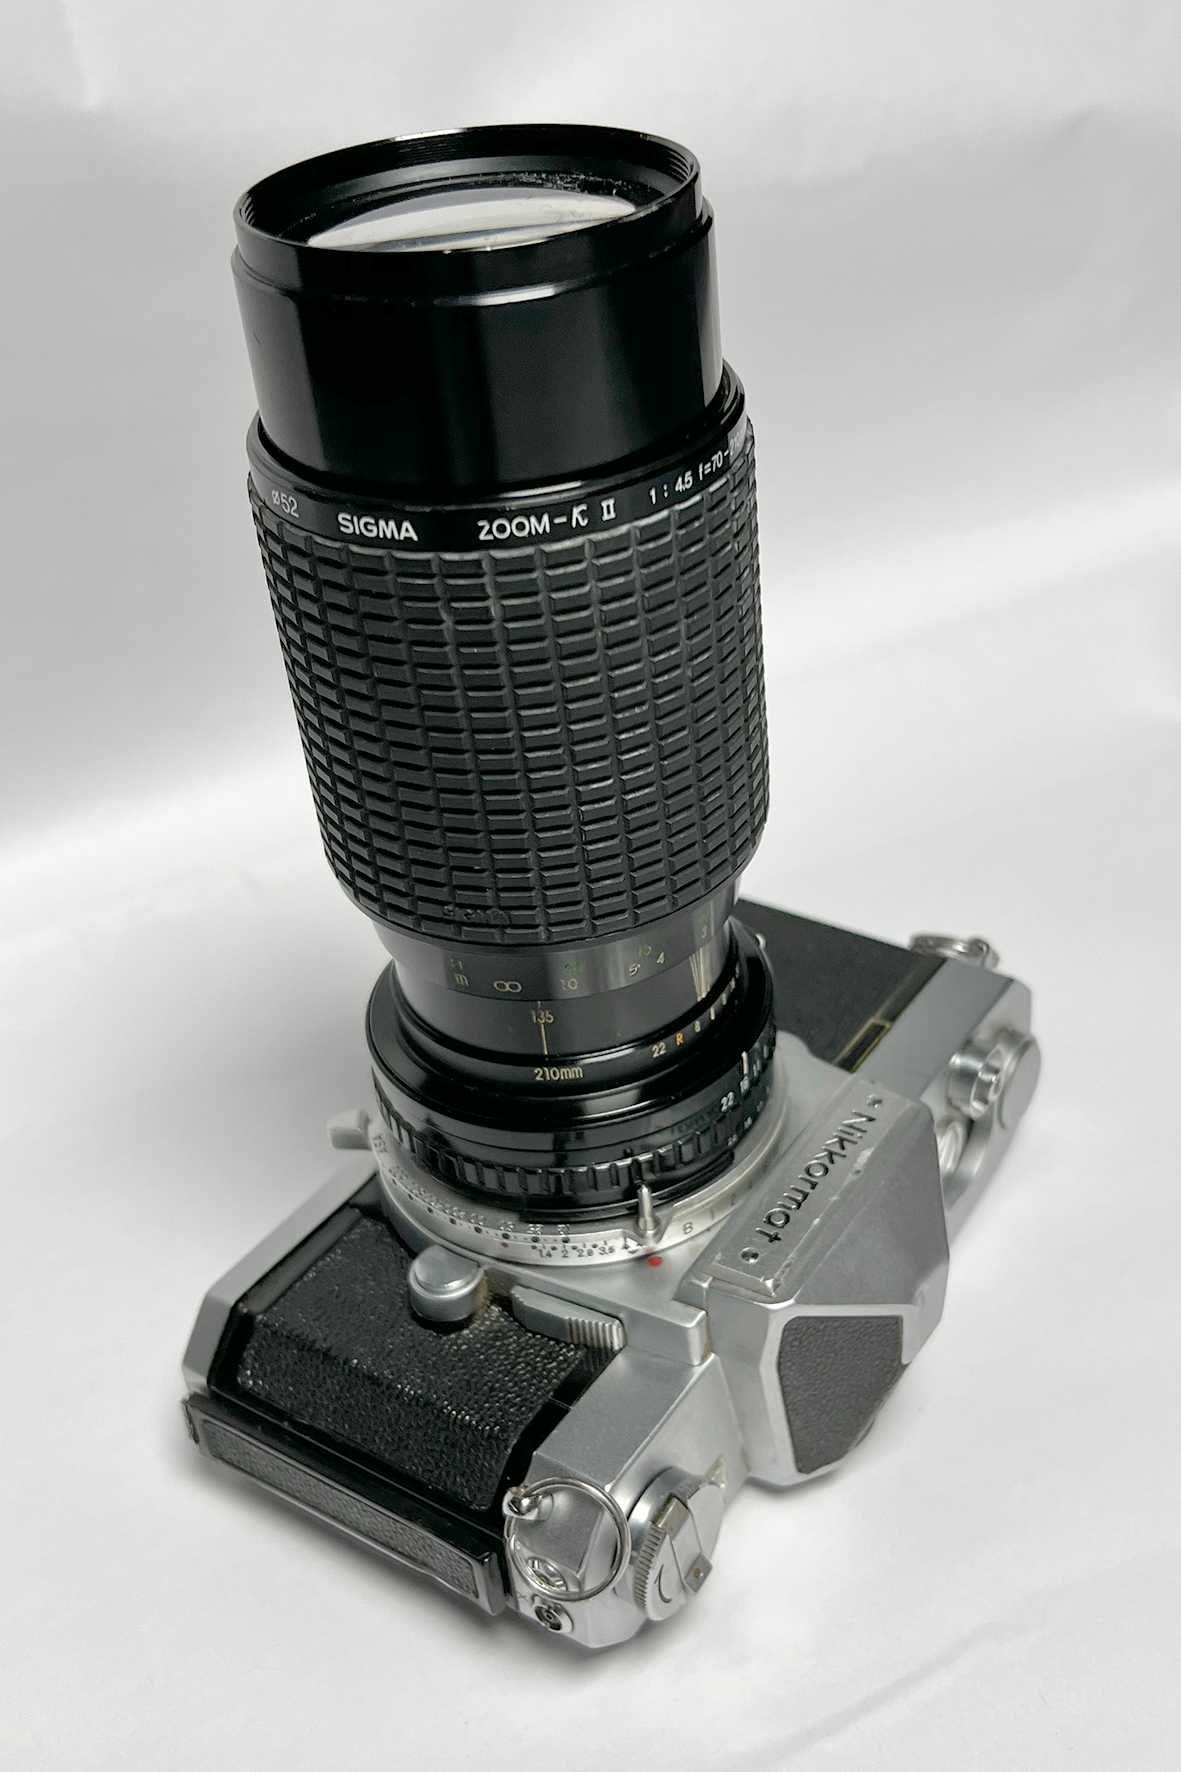 Nikkormat,Nikon FT foto film colectie